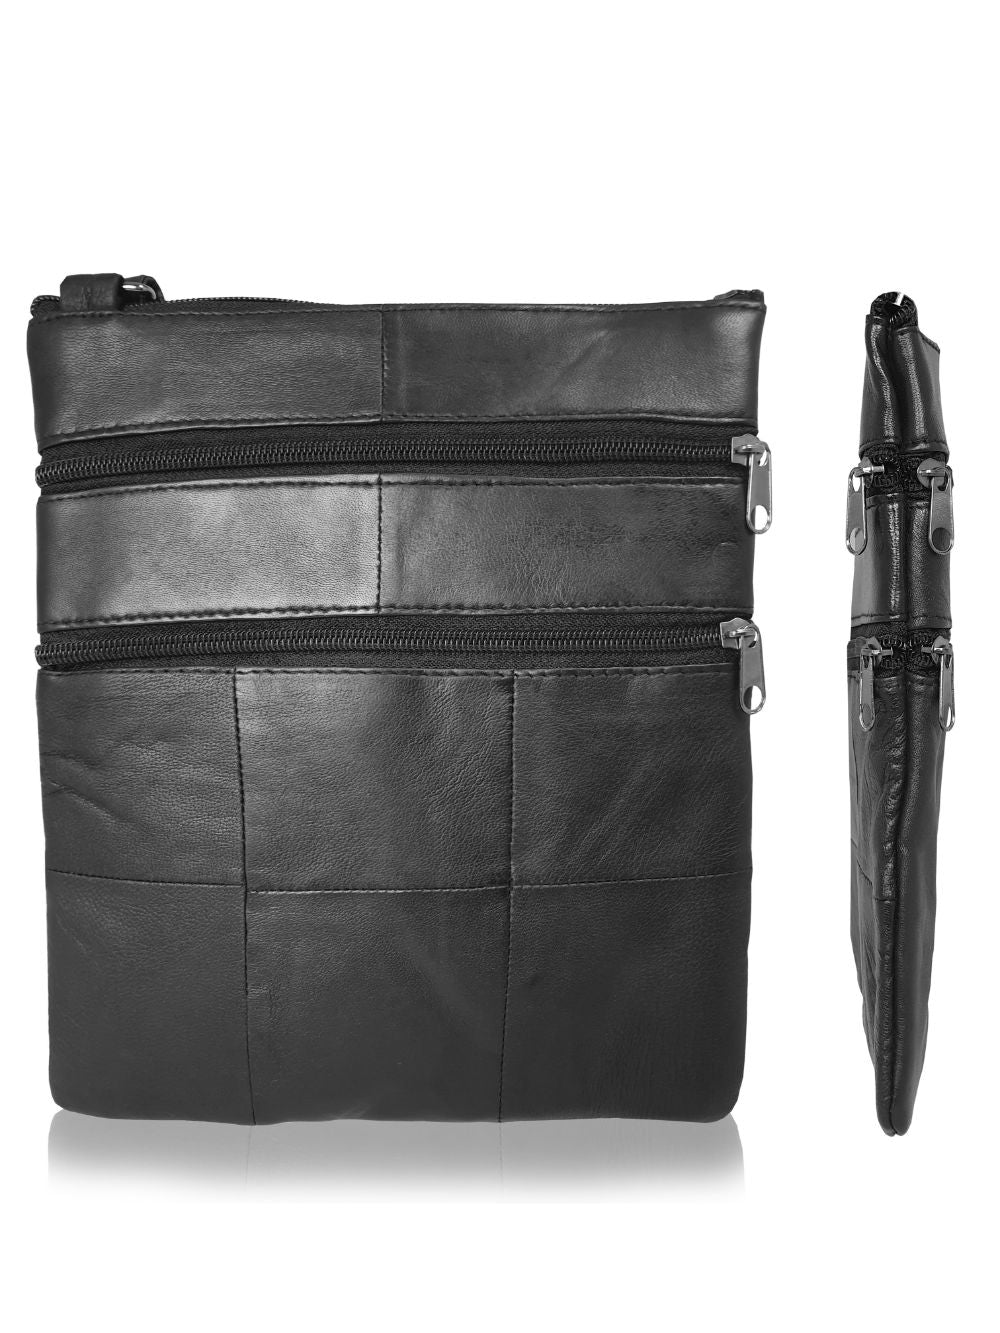 Roamlite Mens Travel pouch black leather RL178 side